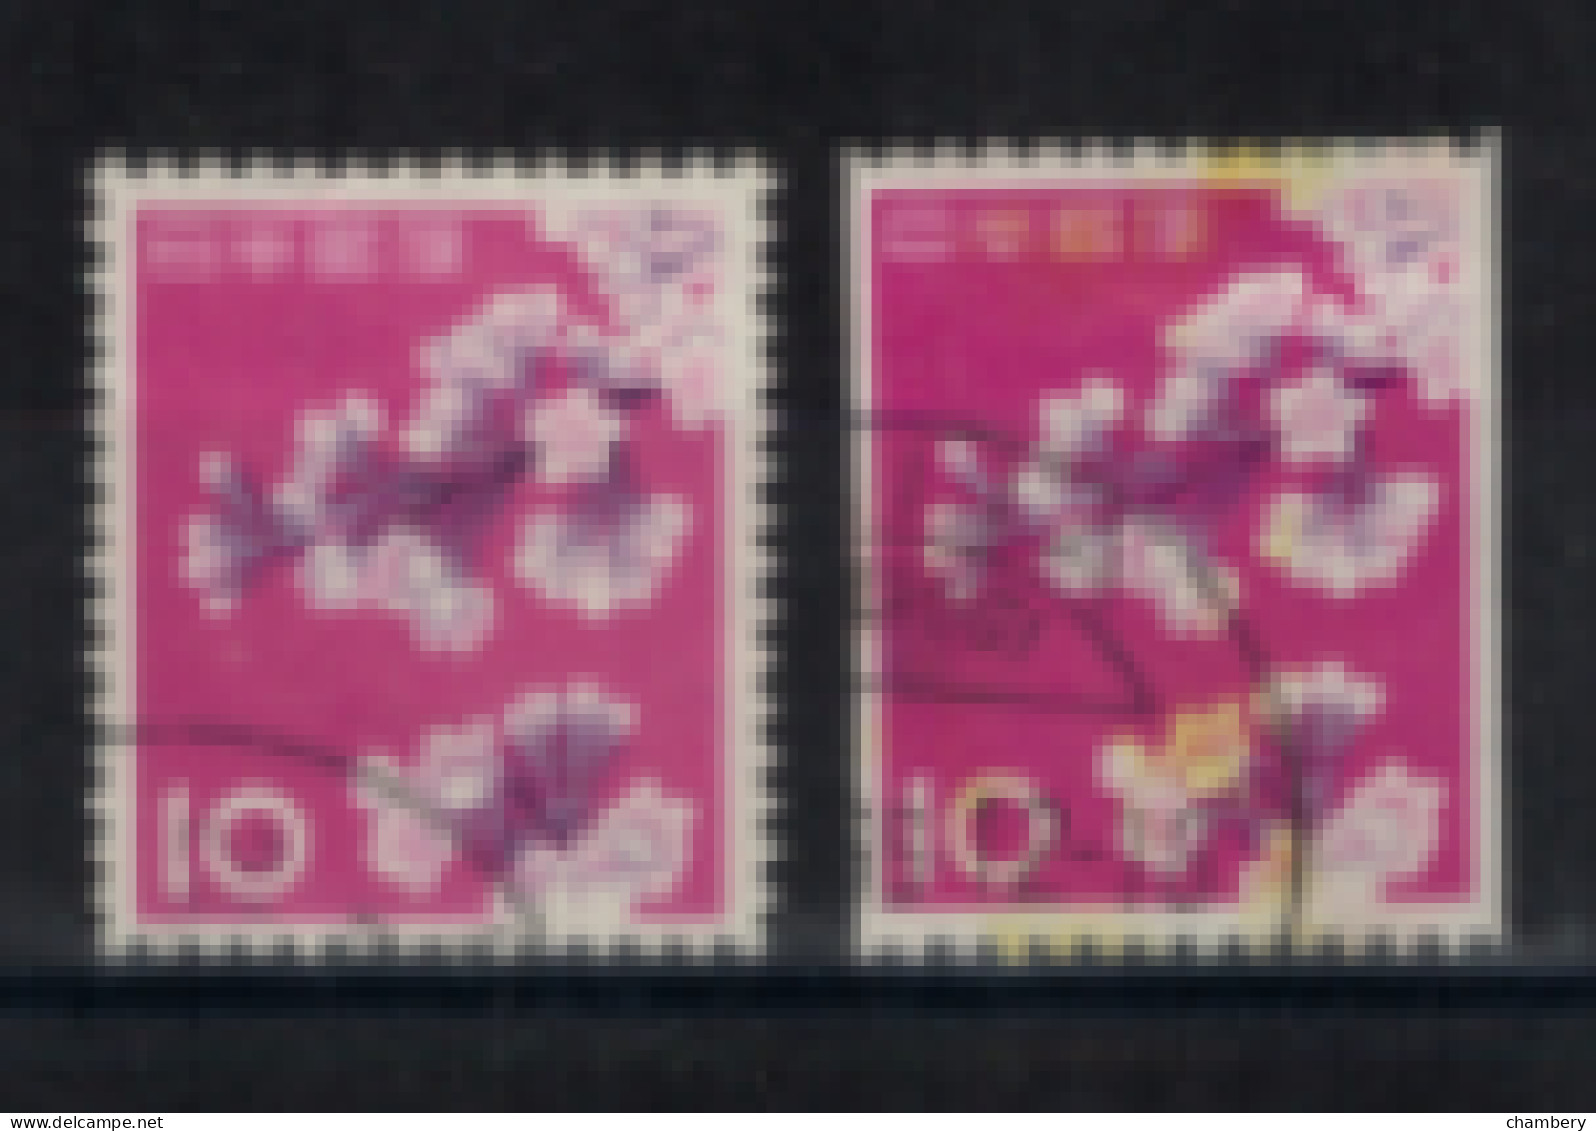 Japon - "Cerisiers En Fleurs" -Oblitéré N° 677 Et 677a De 1961 - Usados